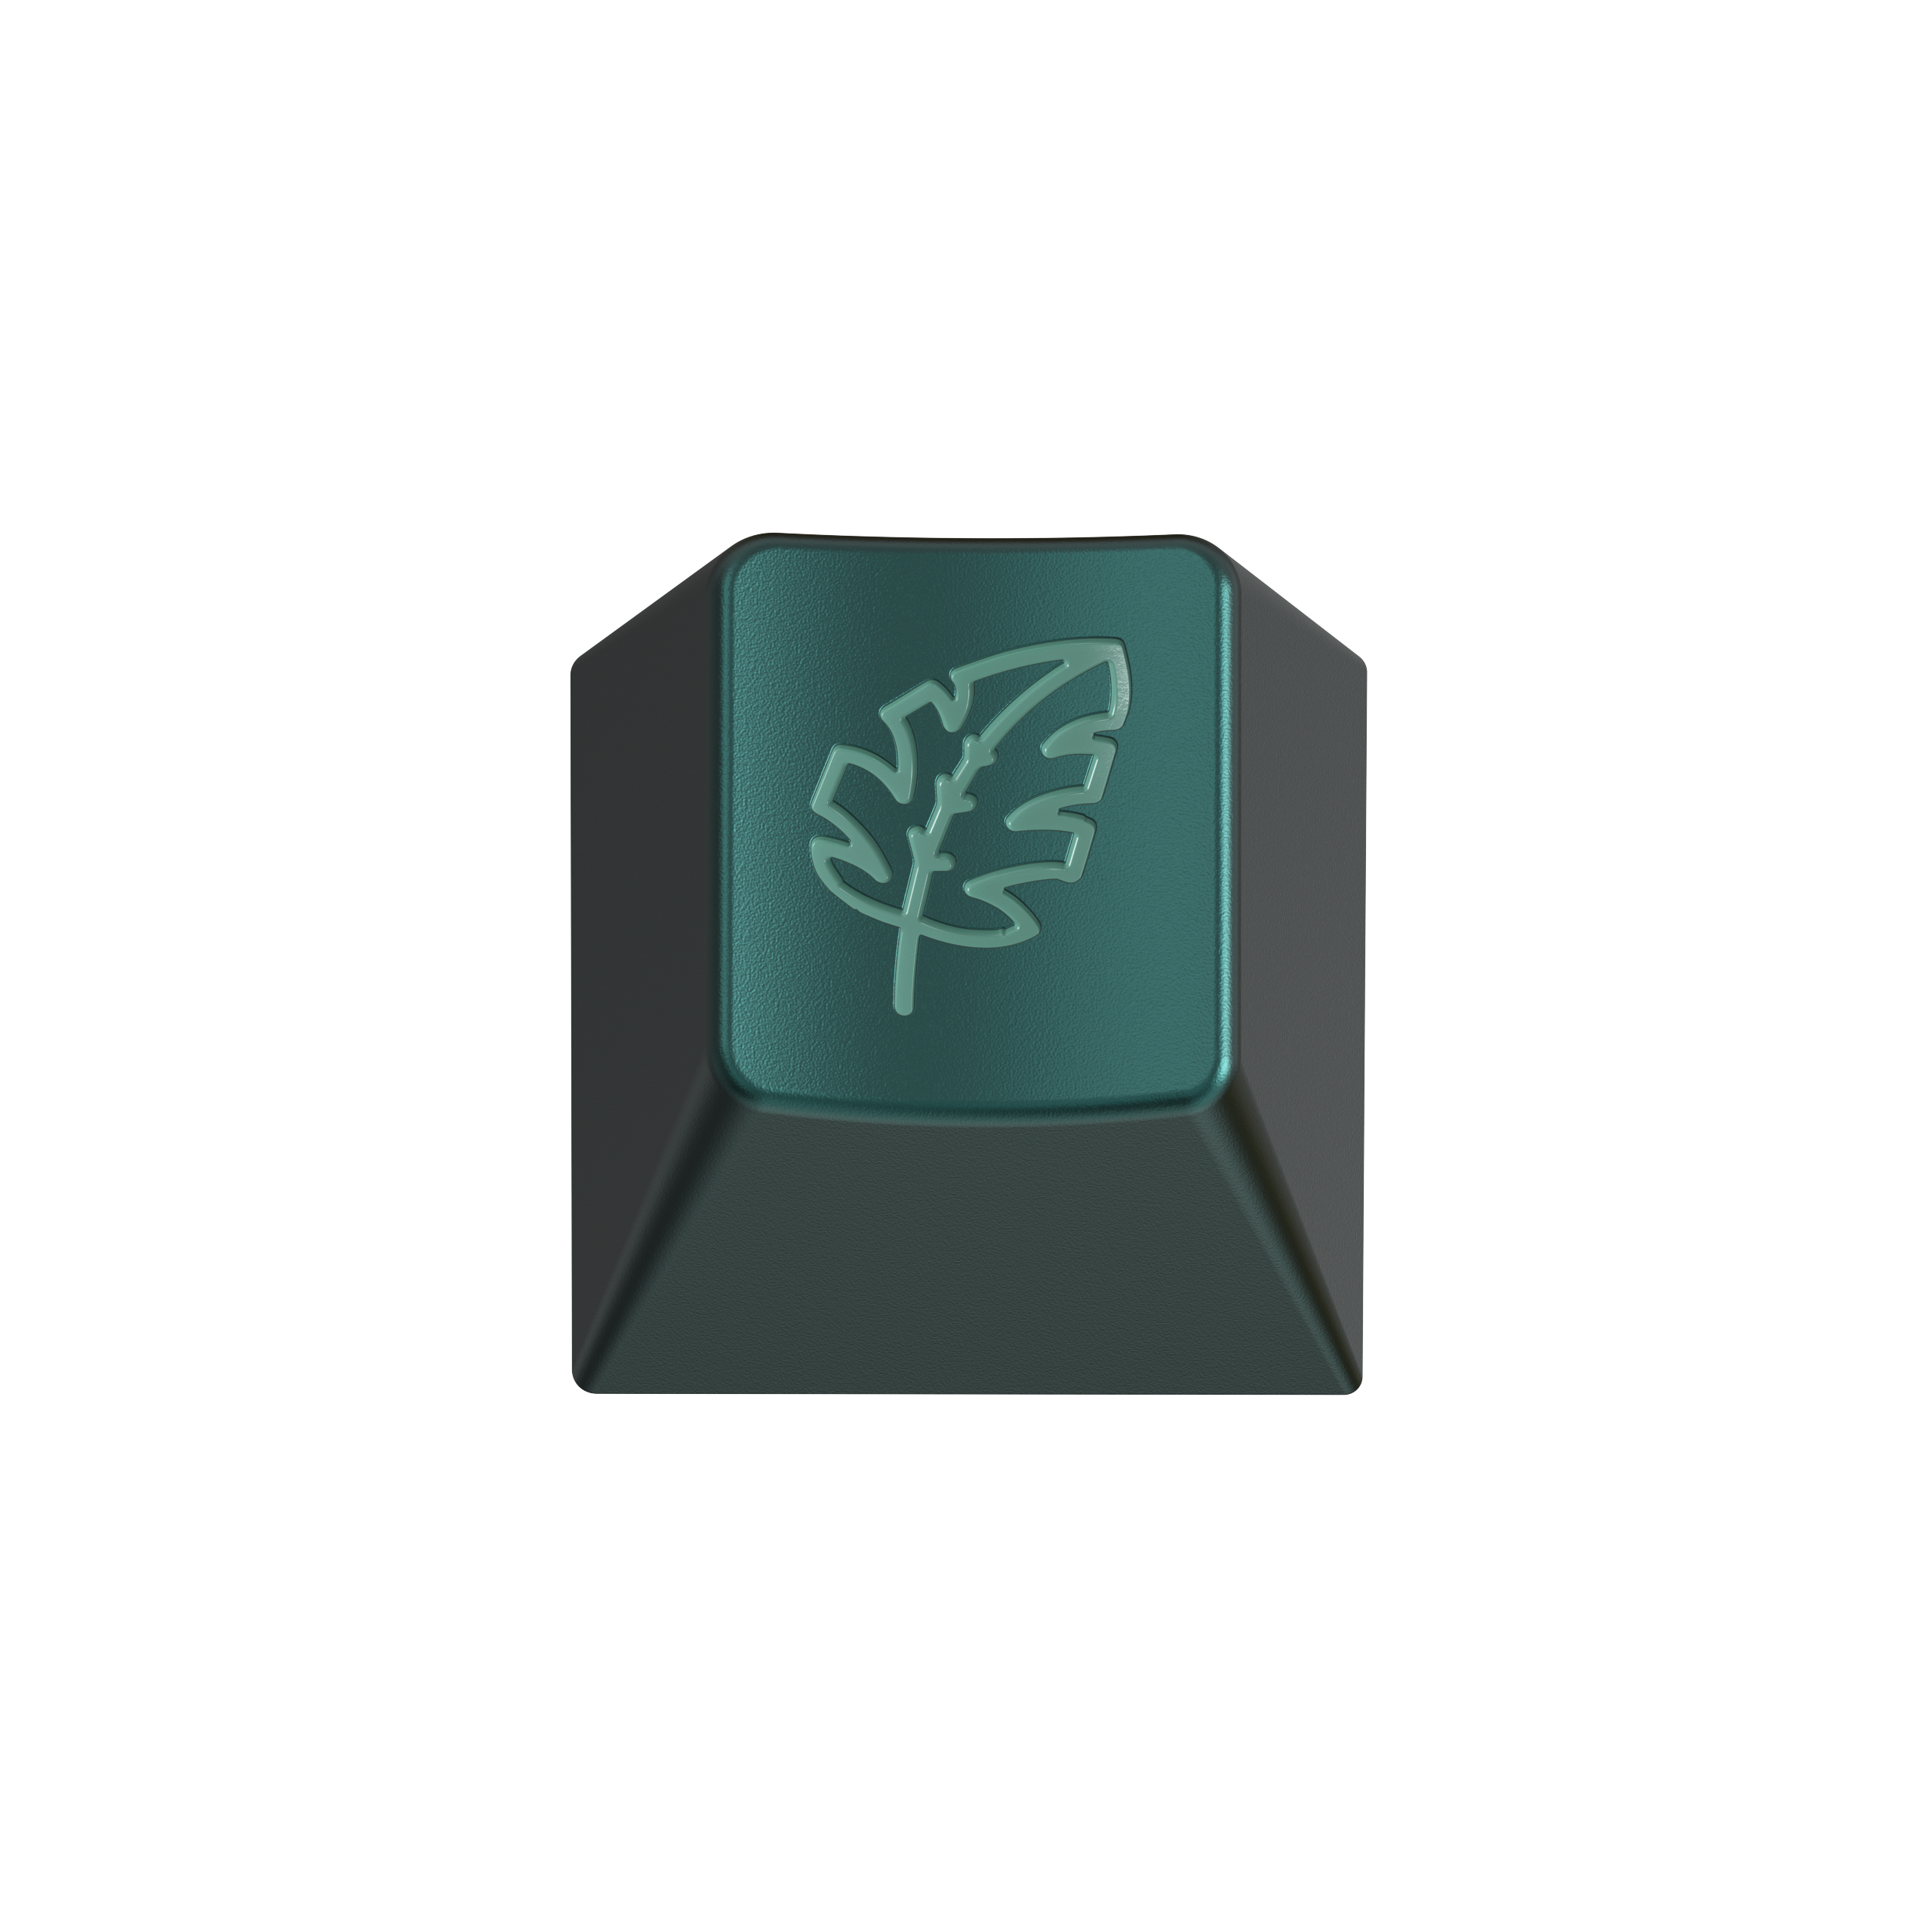 [In Stock] Botanical 2 x RAMA Artisan Keycap